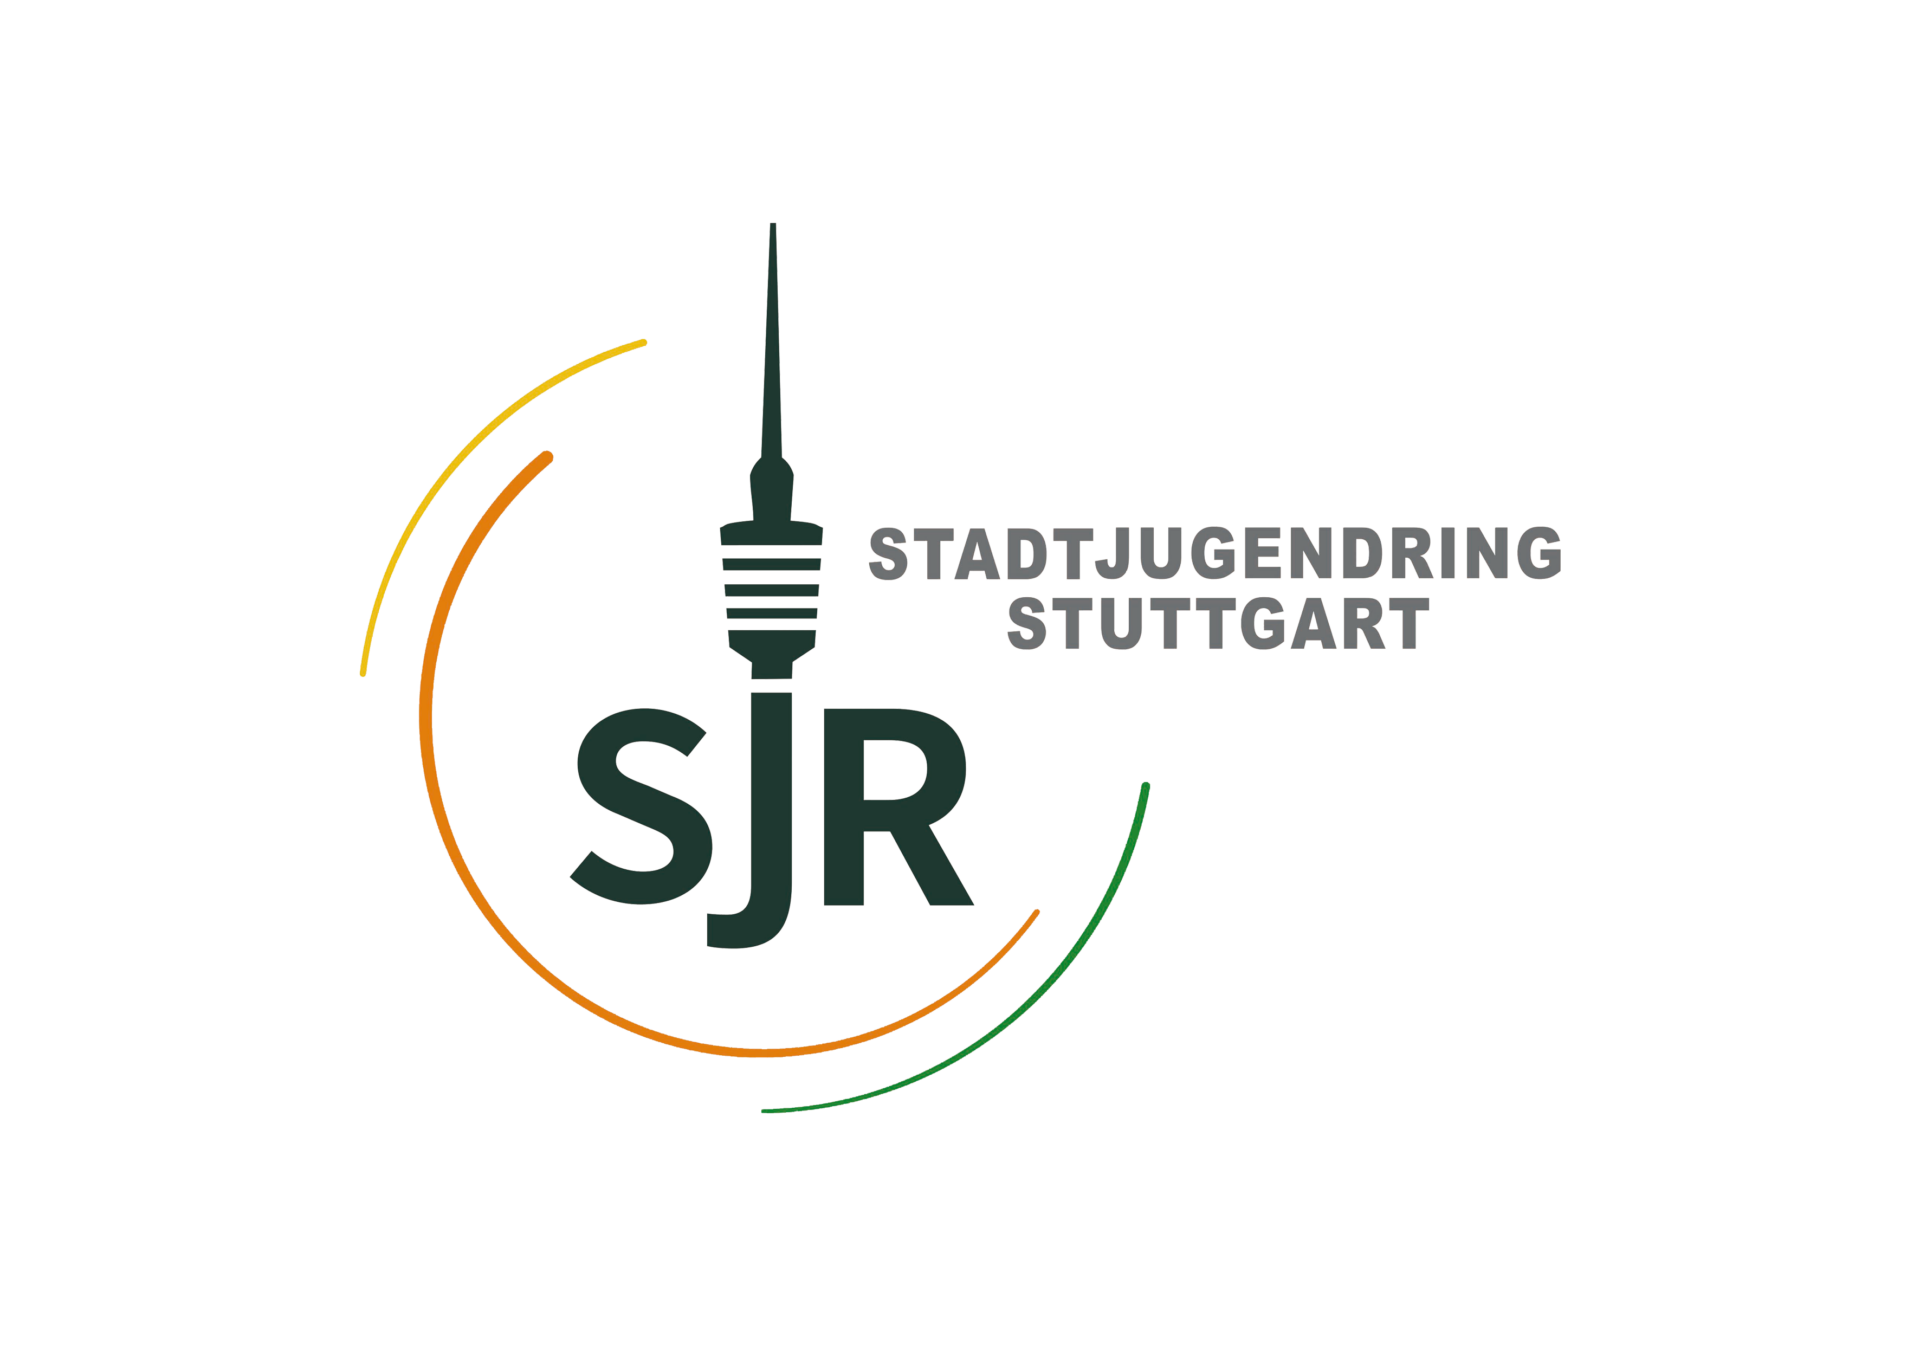 Stadtjugendring Stuttgart